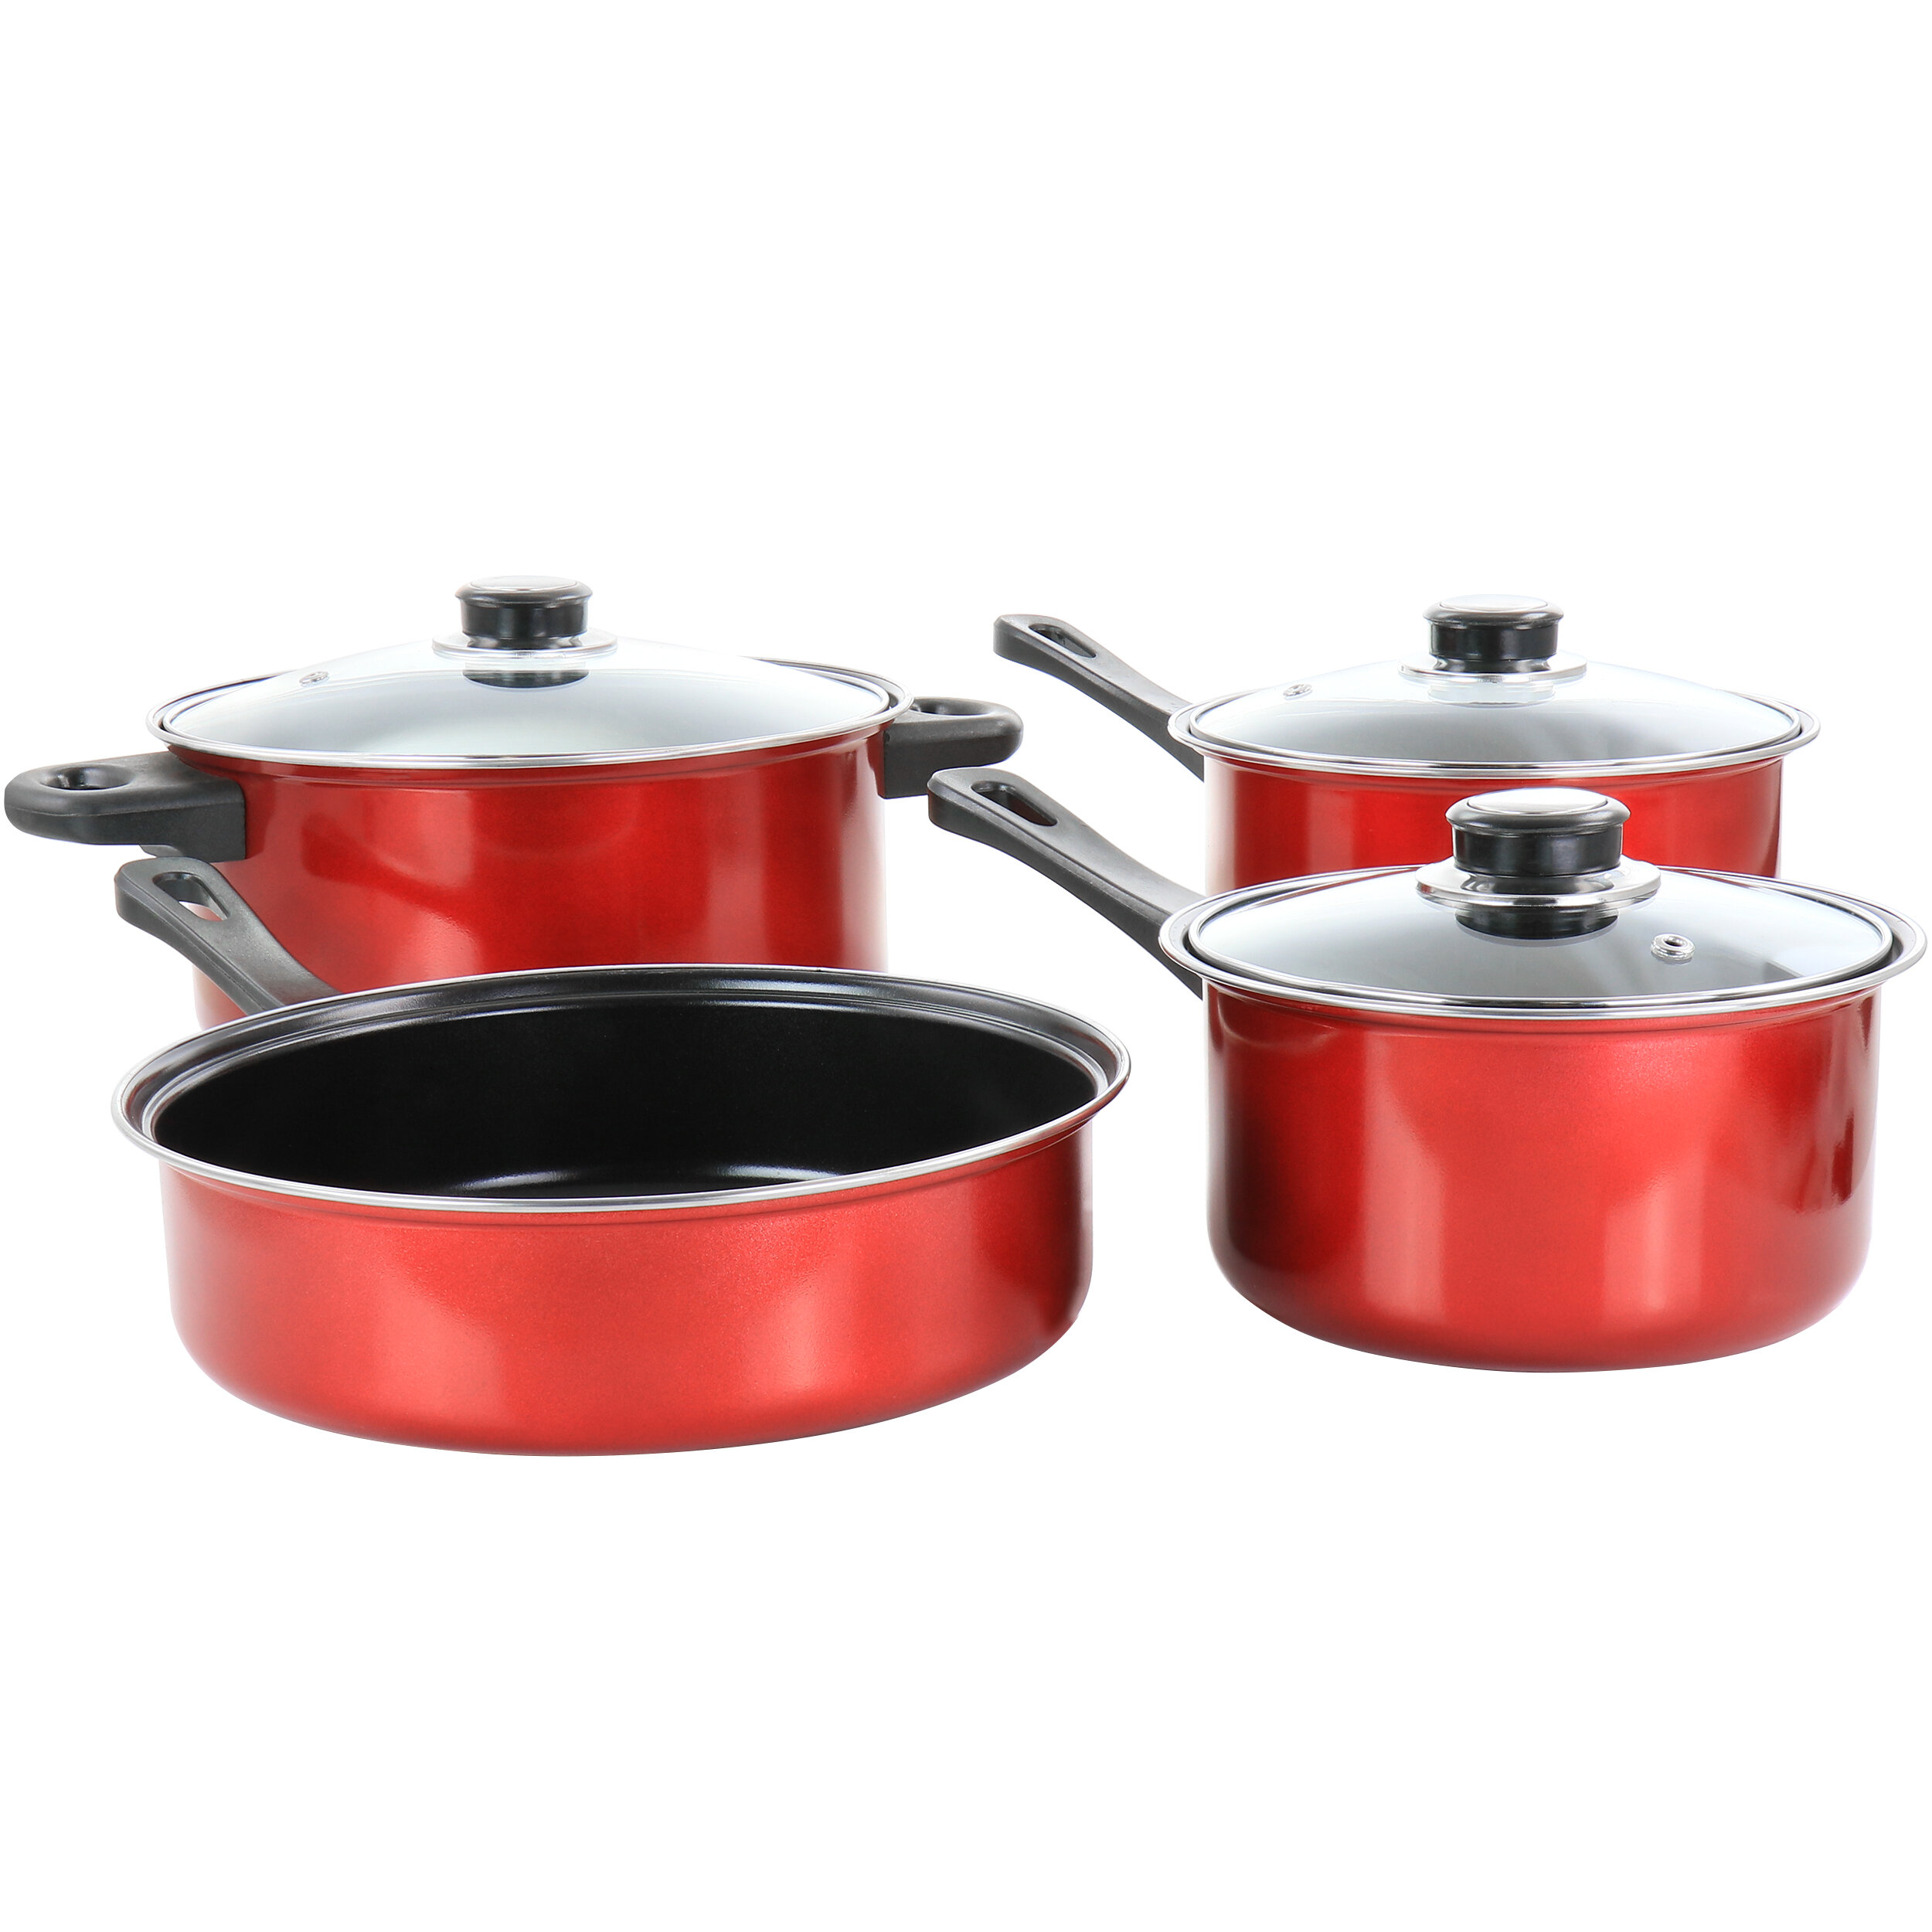 https://assets.wfcdn.com/im/54115033/compr-r85/1846/184661061/7-piece-non-stick-carbon-steel-cookware-set.jpg